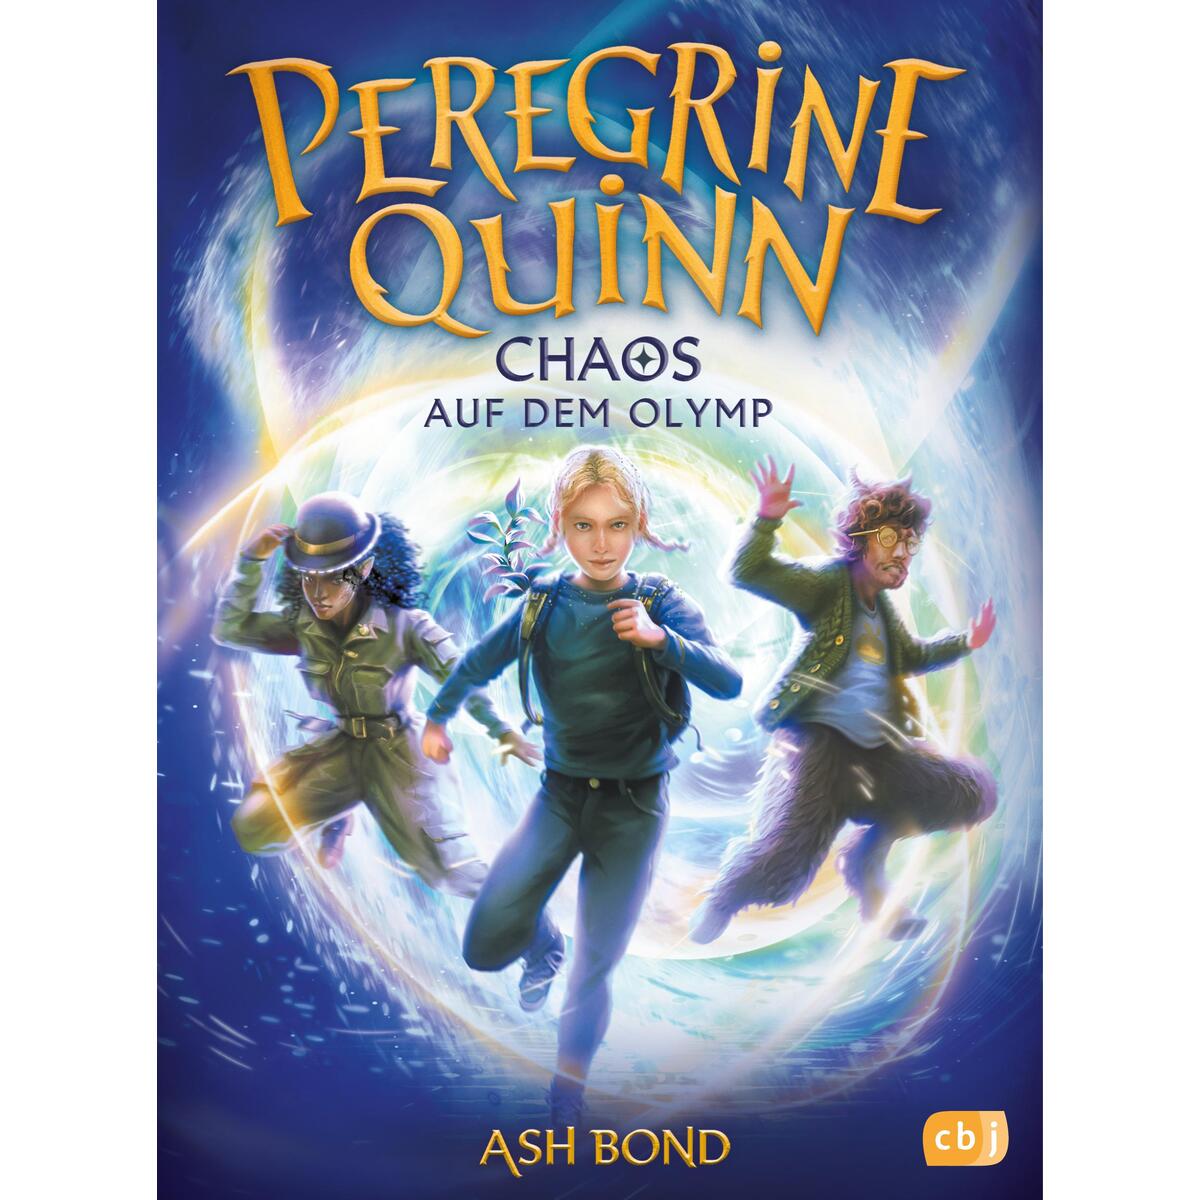 Peregrine Quinn - Chaos auf dem Olymp von cbj